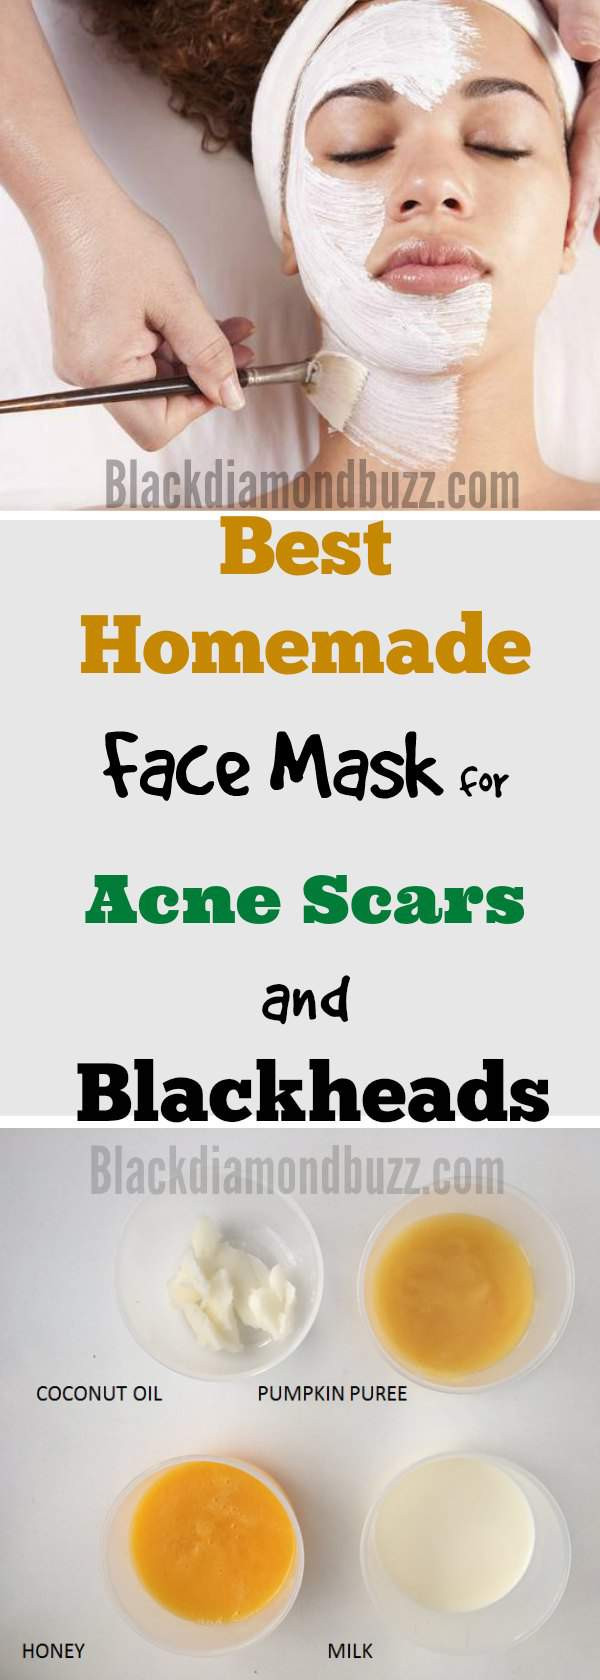 DIY Masks For Acne
 DIY Face Mask for Acne 7 Best Homemade Face Masks